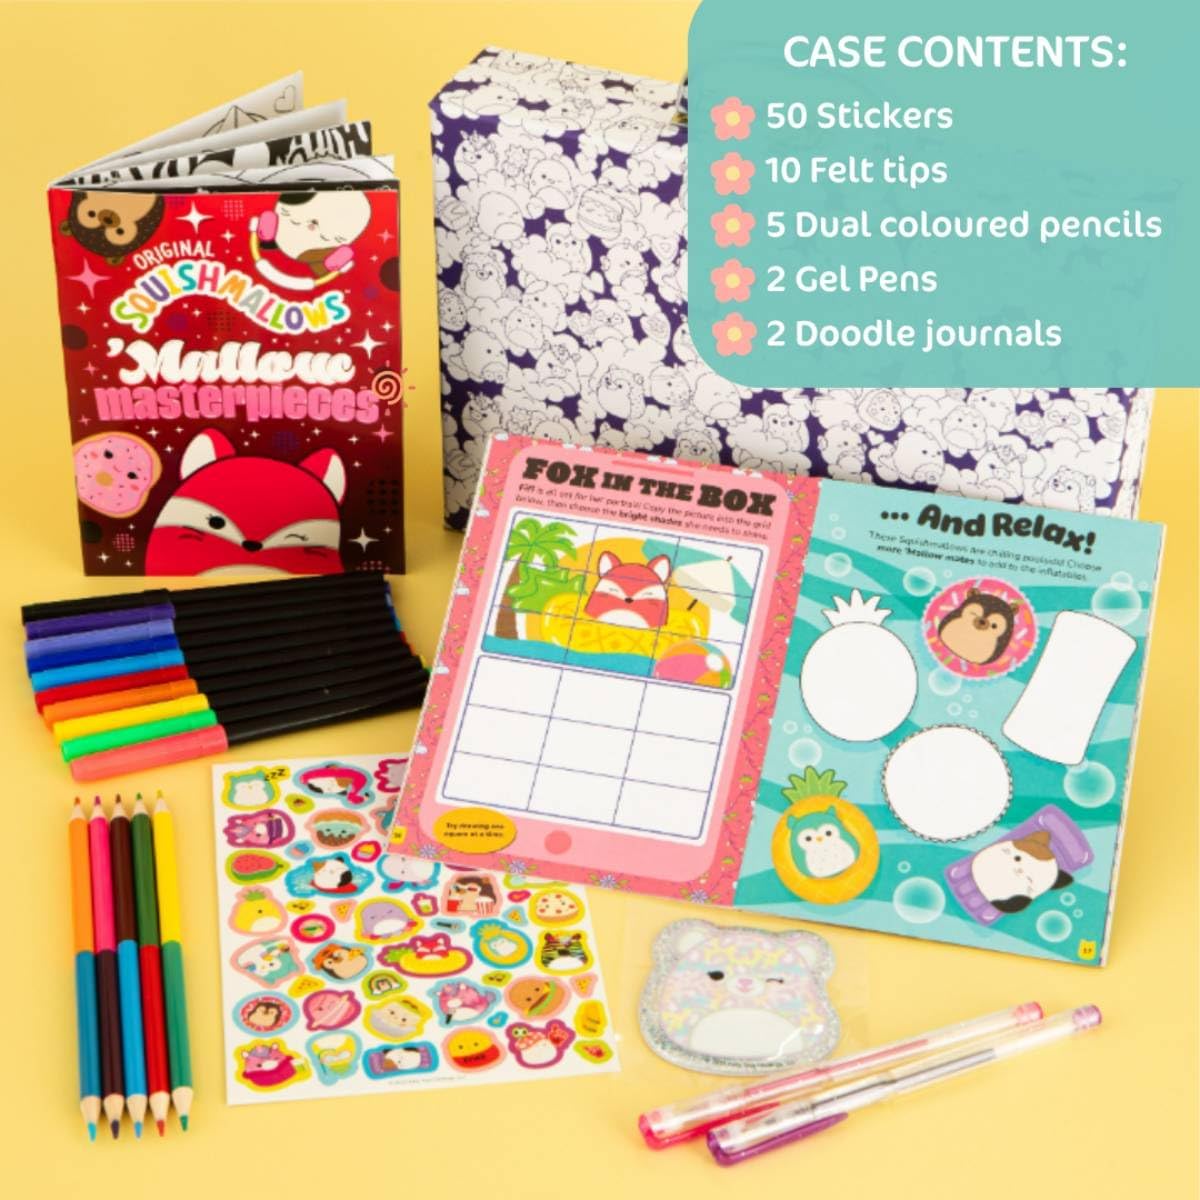 Original Squishmallows Colouring Case | Bookoli | 2 Books Plus 12 Pens, Pencils and Stickers